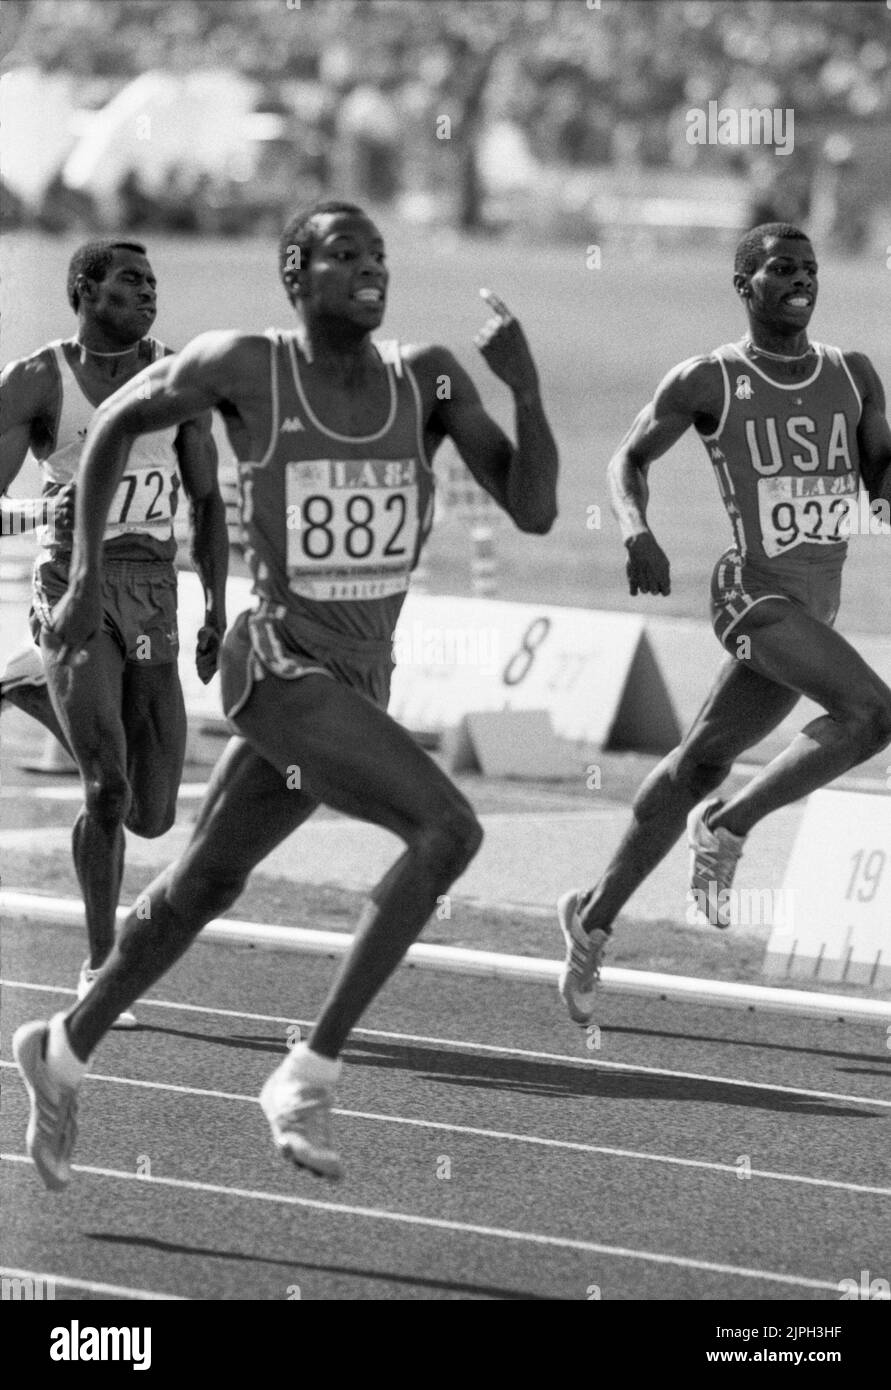 JUEGOS OLÍMPICOS DE VERANO EN LOS ÁNGELES 1984 ALONZO BENERS USA 922 y Antonio McKay 882 luchan para ganar ante Gabriel Tiacoh Costa de Marfil a 400 m. Foto de stock